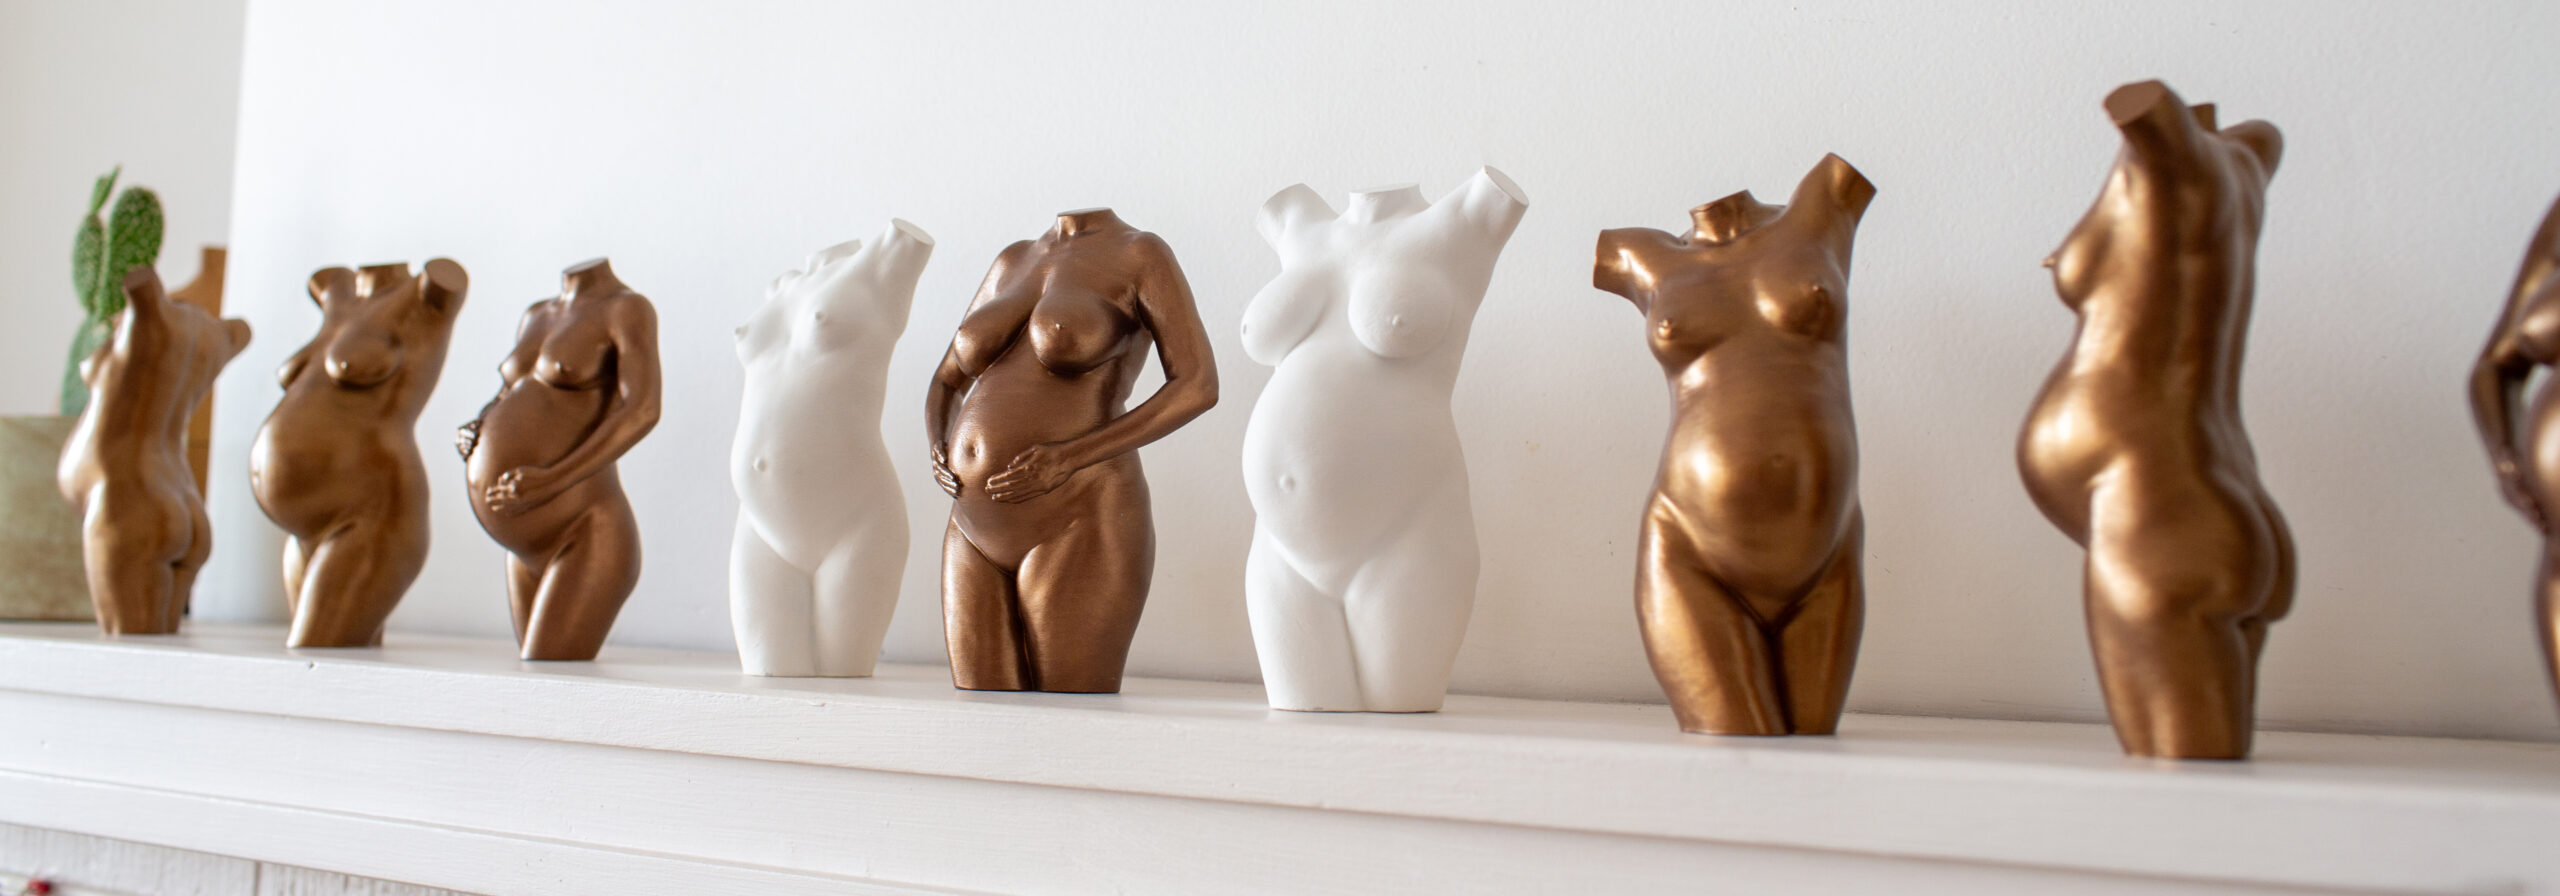 bespoke_pregnancy_sculptures4